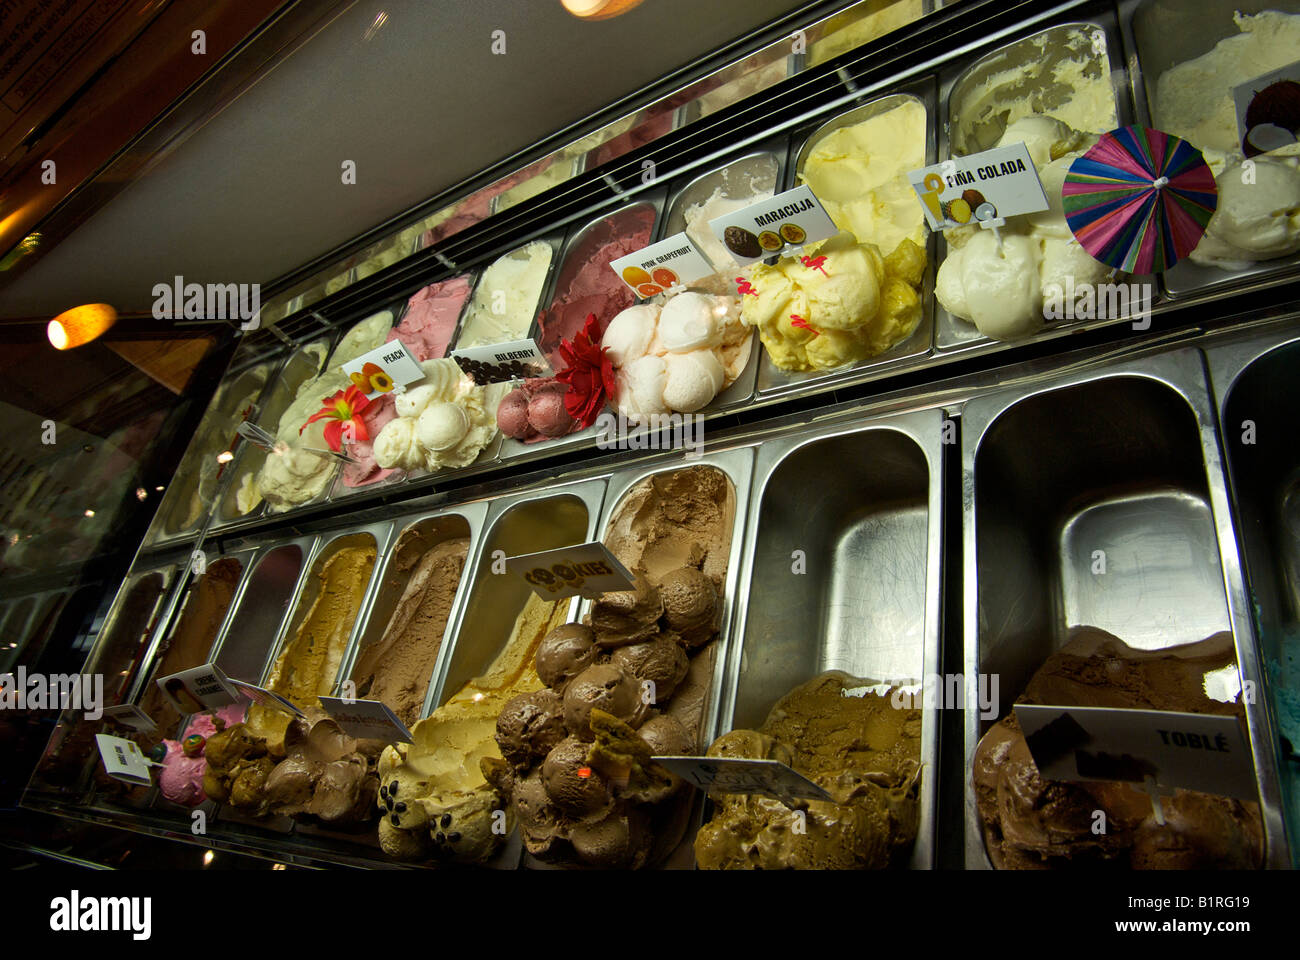 Boules de glace gastronomique dans un congélateur vitrine Photo Stock -  Alamy